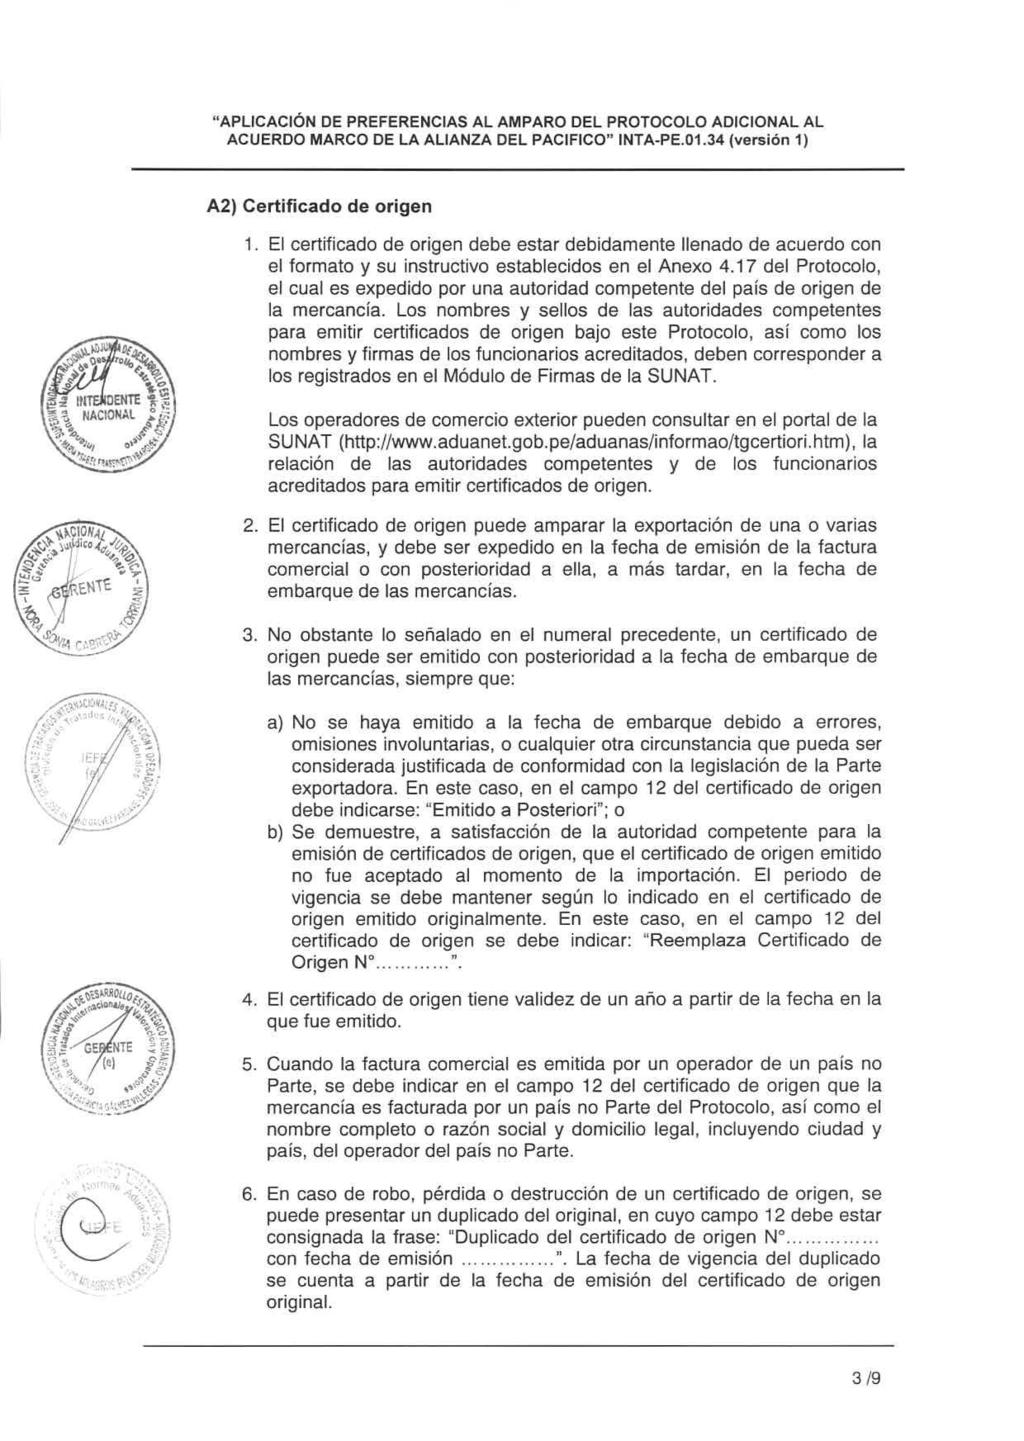 "APLICACIÓN DE PREFERENCIAS AL AMPARO DEL PROTOCOLO ADICIONAL AL ACUERDO MARCO DE LA ALIANZA DEL PACIFICO" INTA-PE.01.34 versión 1) A2) Certificado de origen 1.